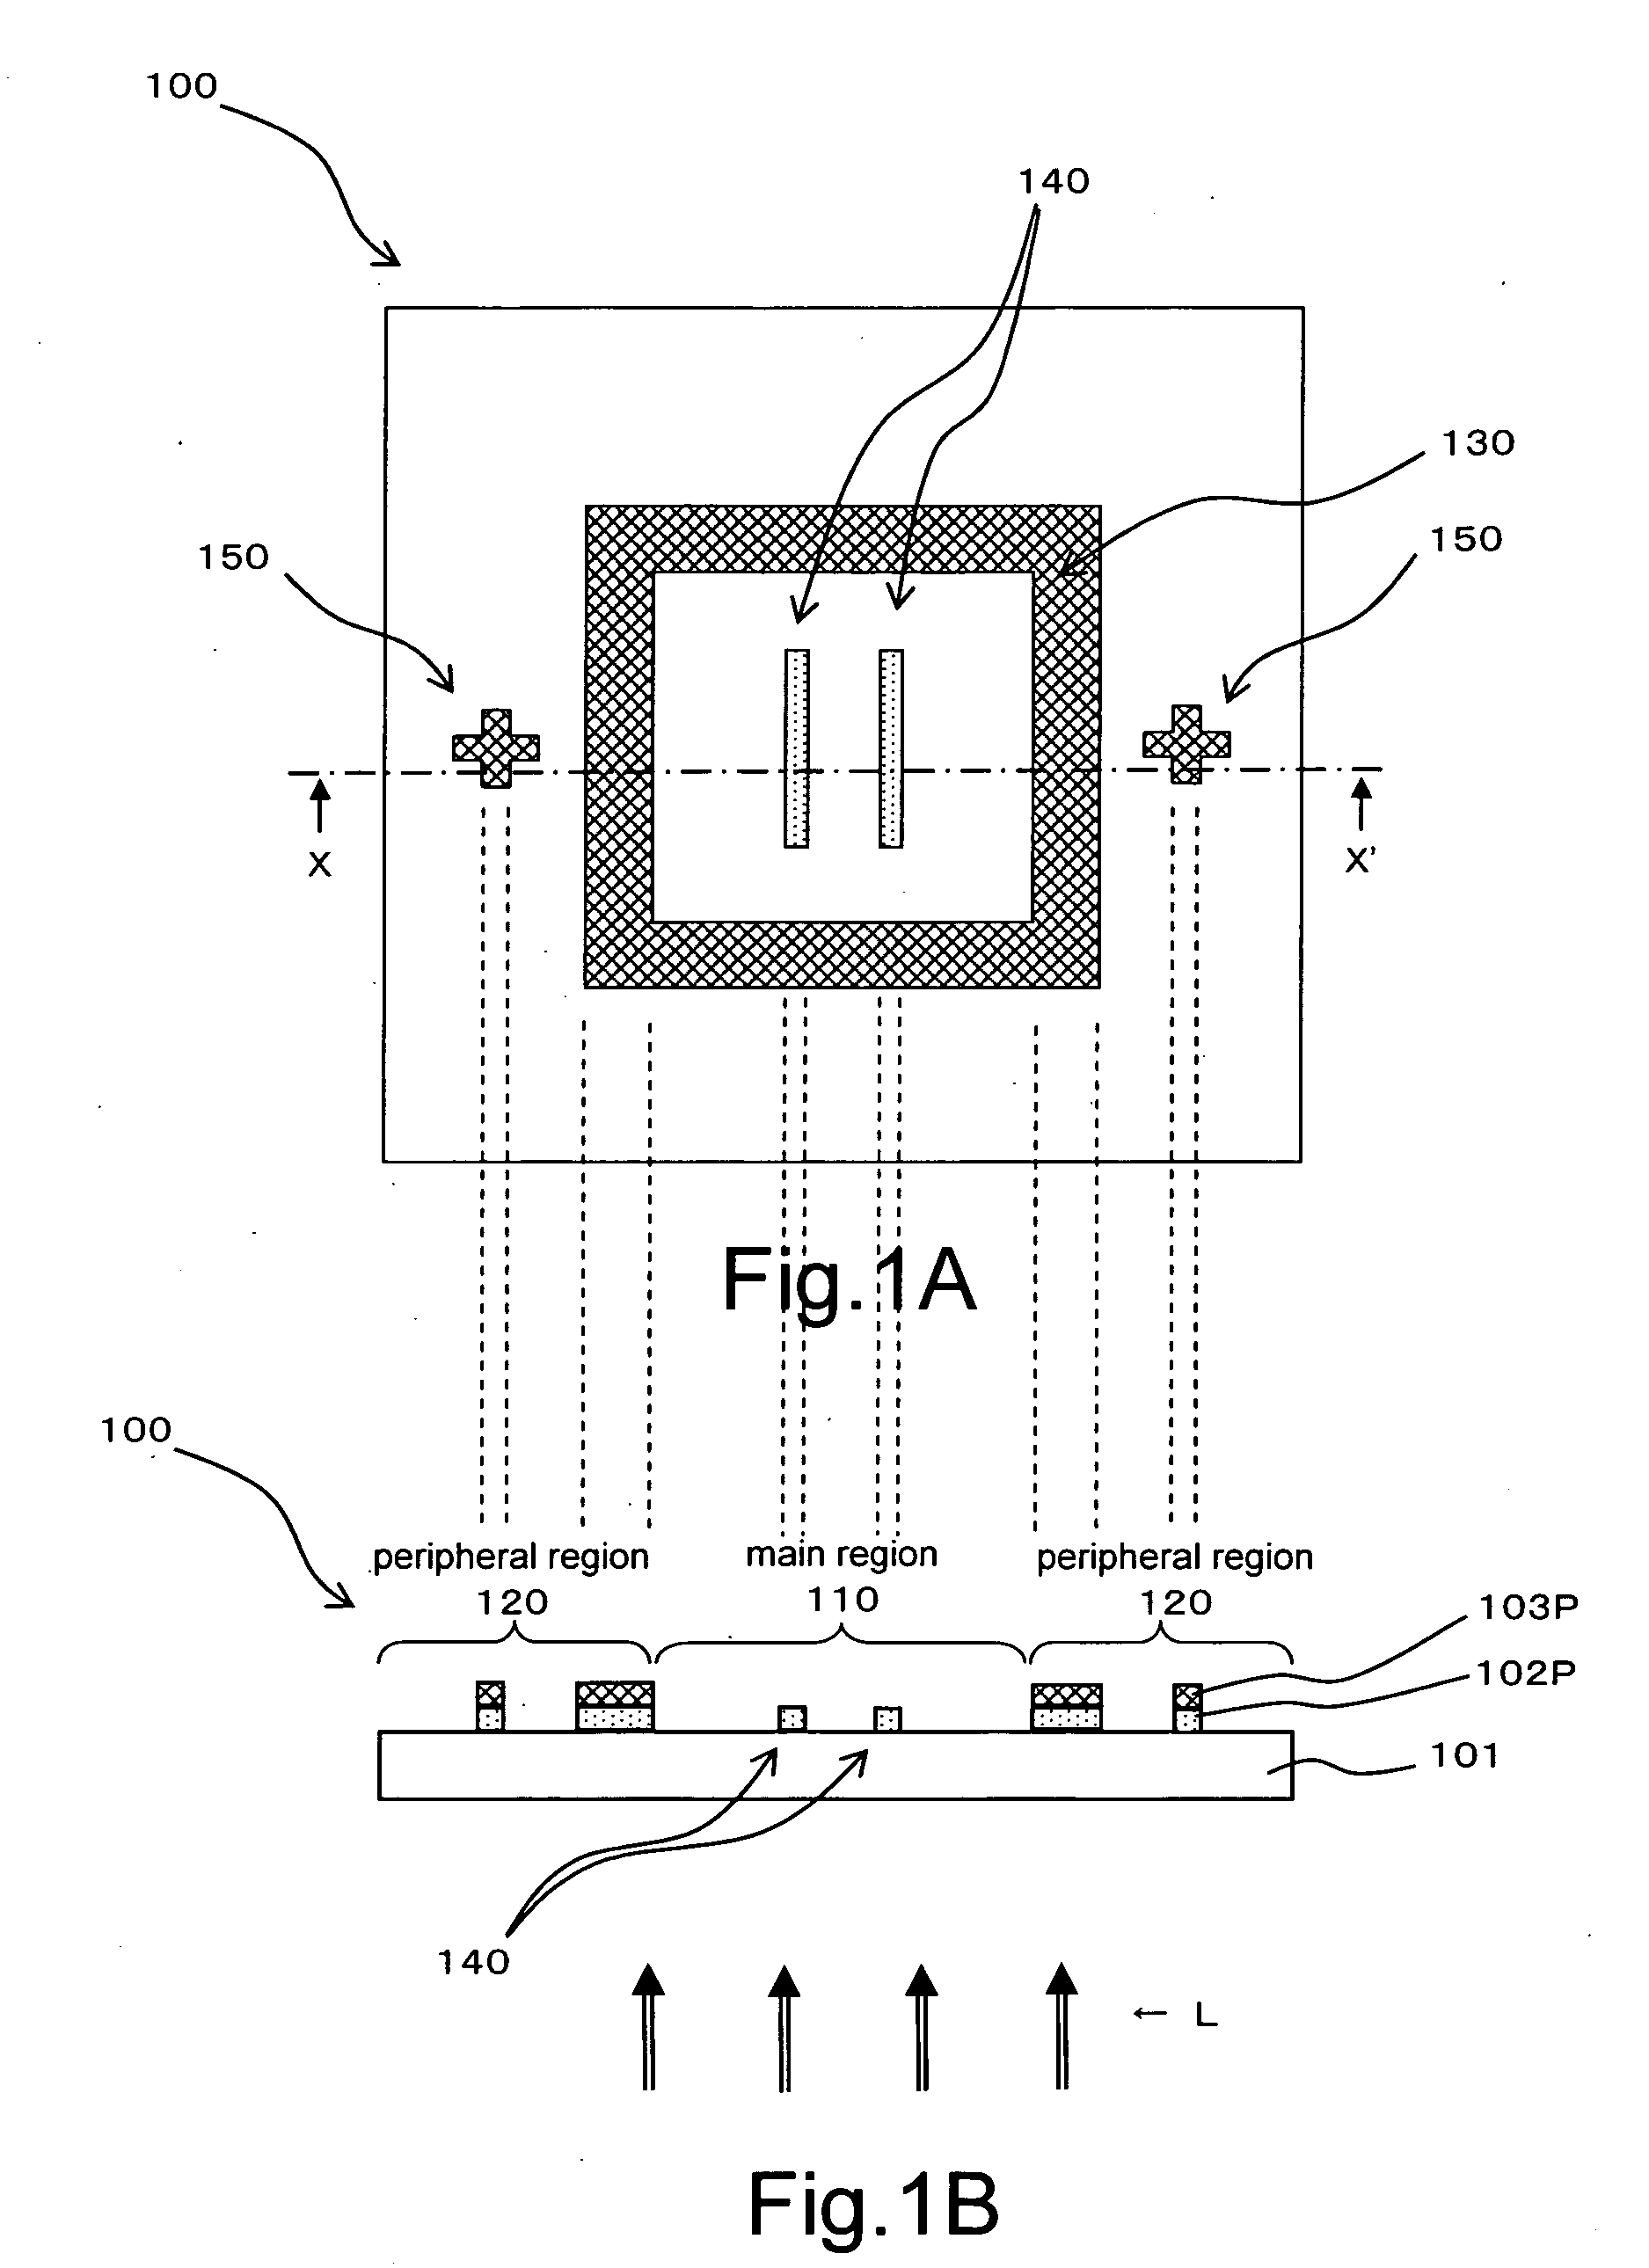 Photomask, method for fabricating photomask, and method for fabricating semiconductor device